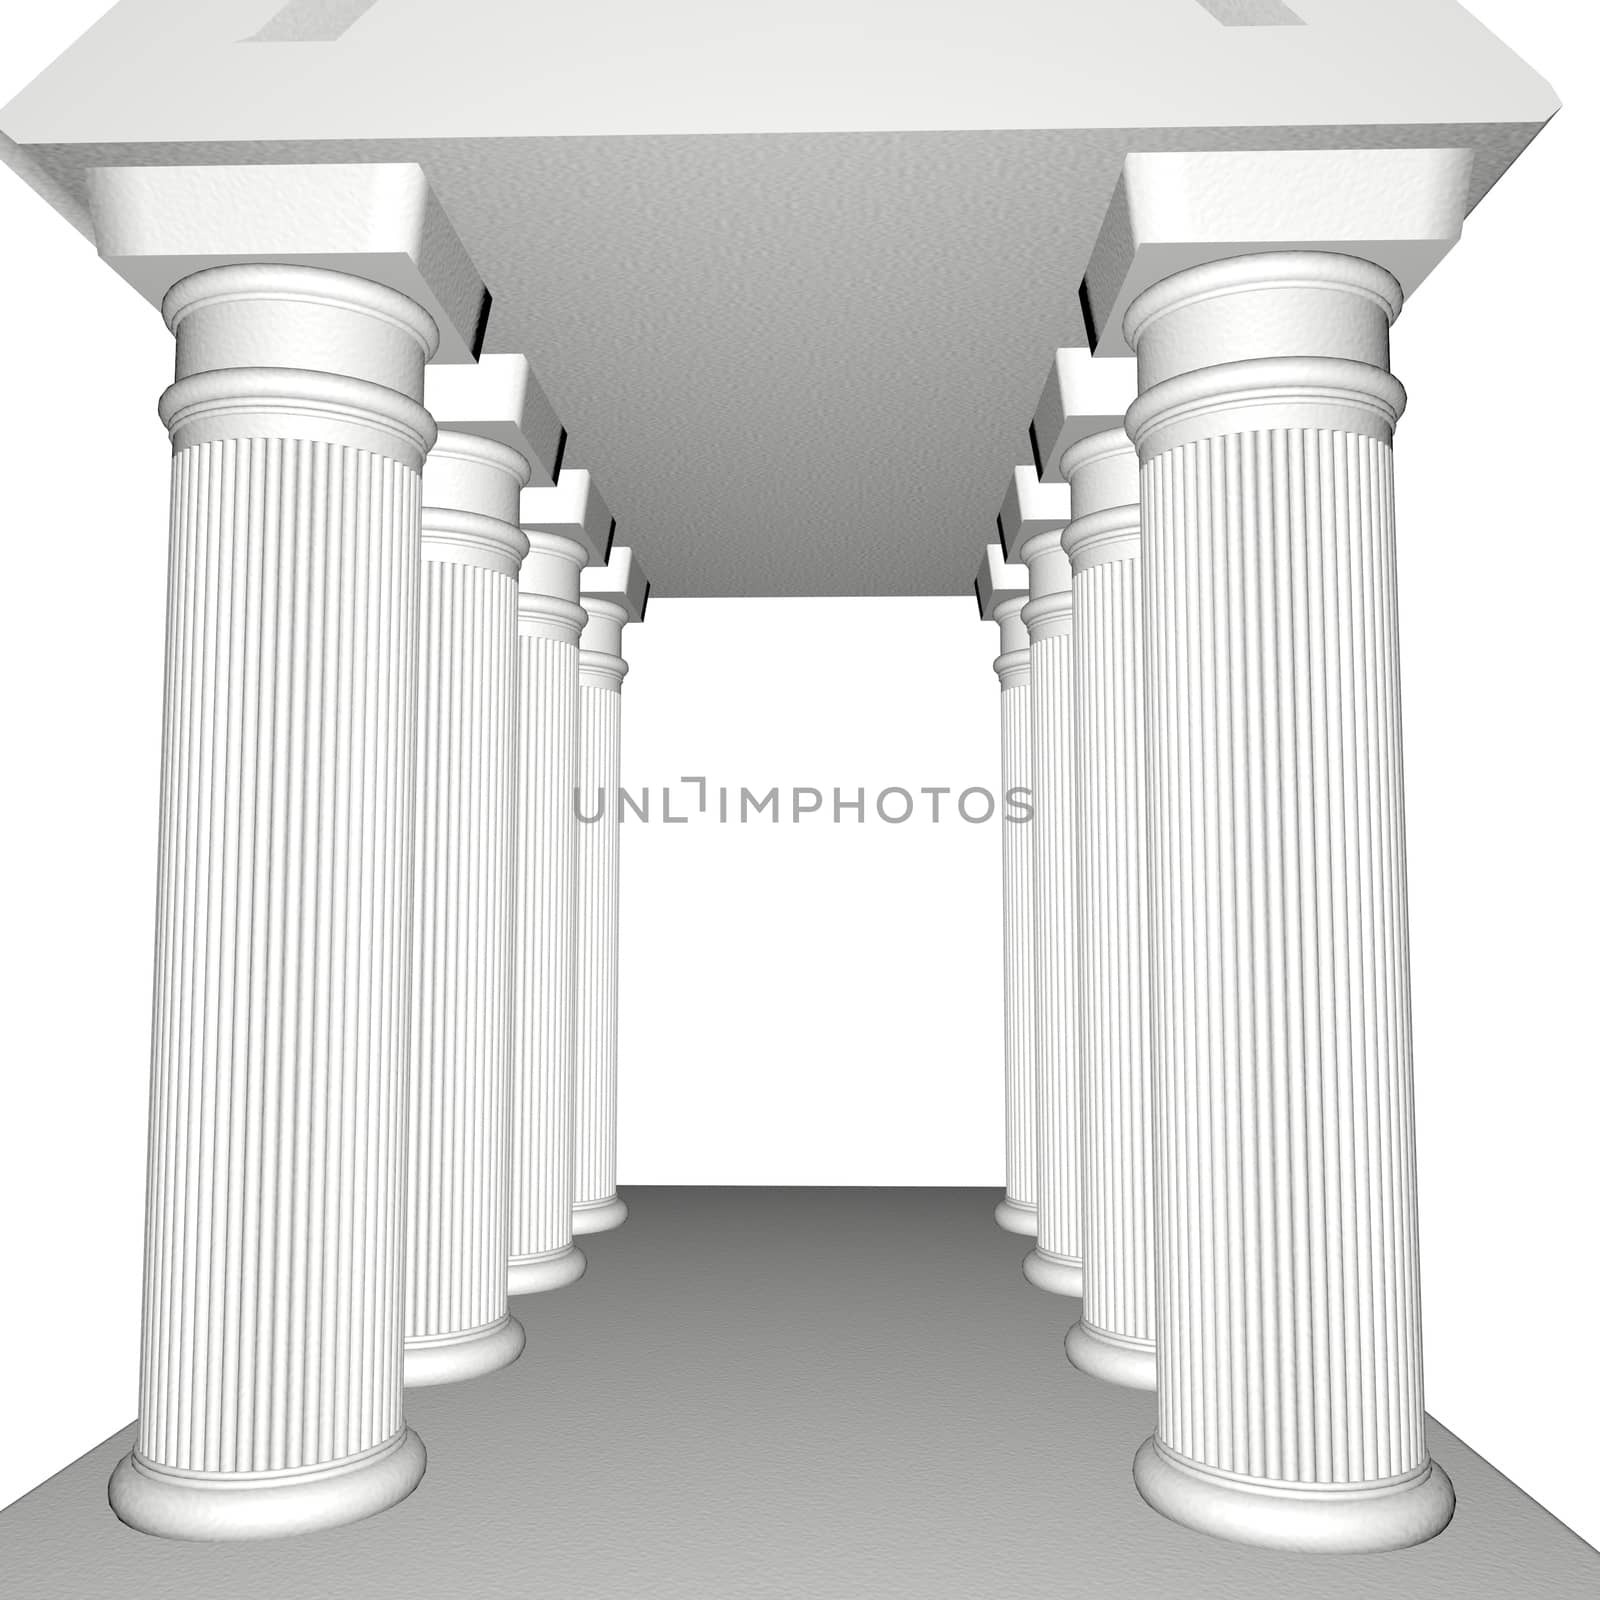 Greek Temple by Koufax73